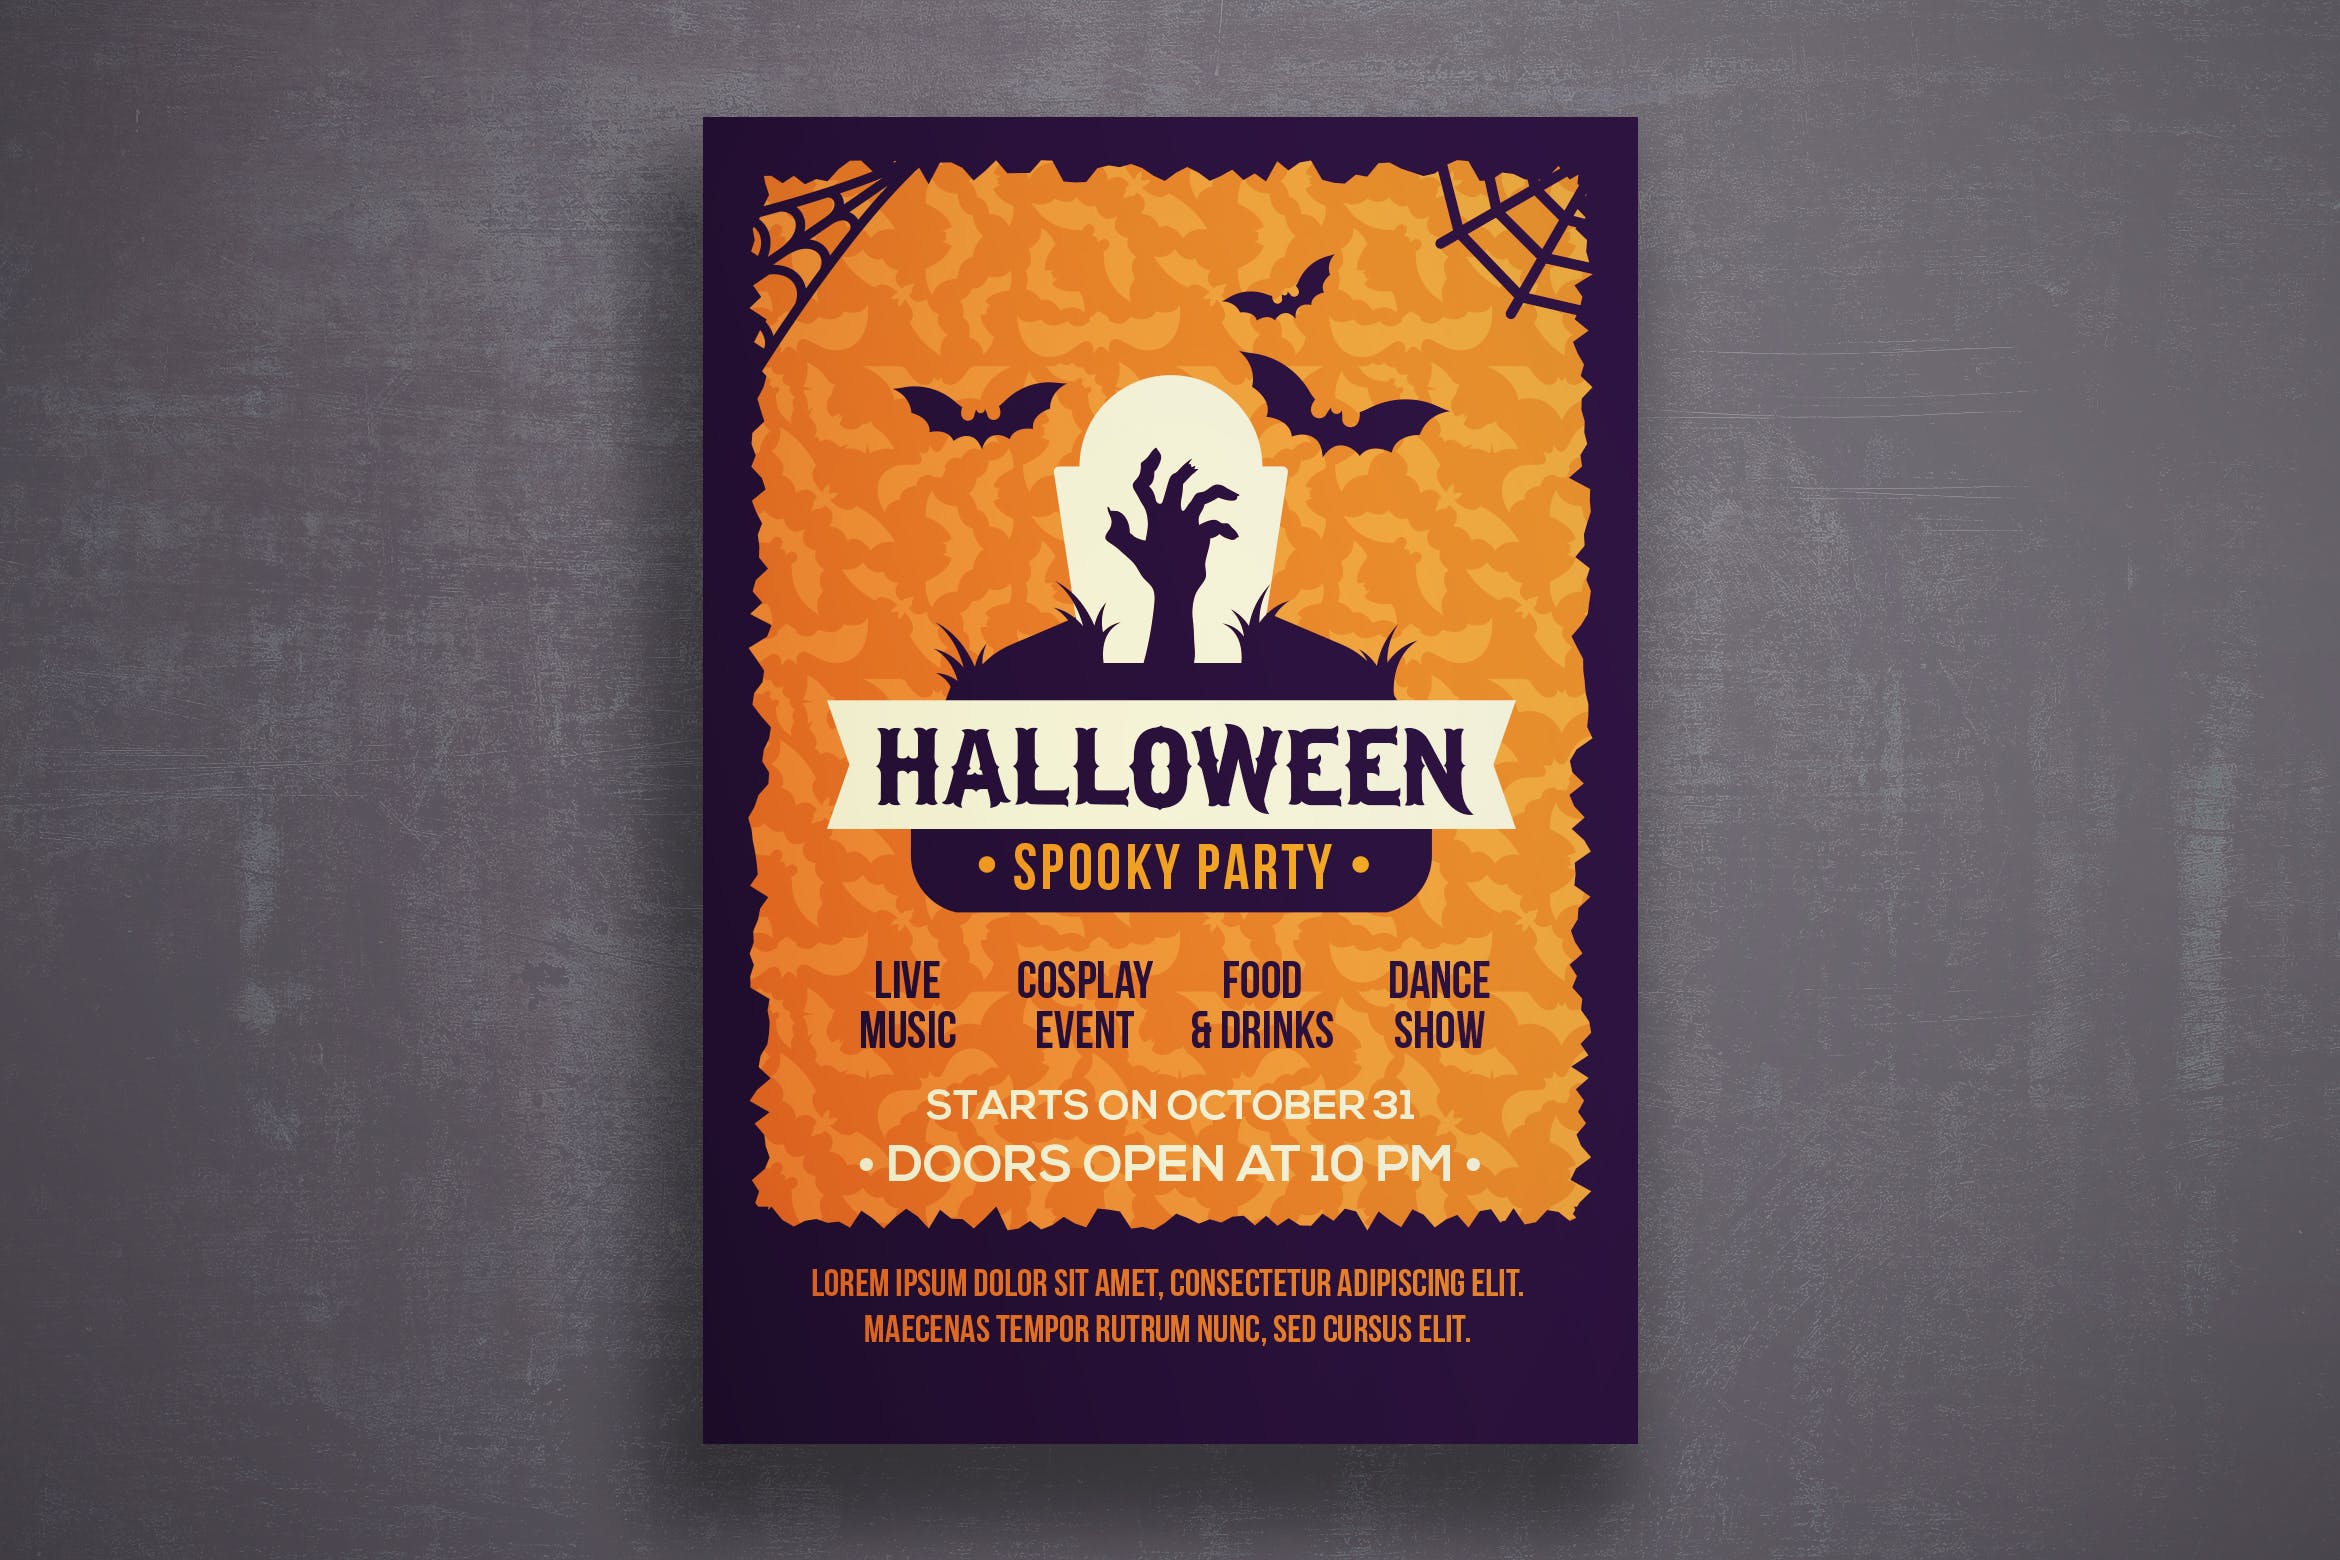 万圣节恐怖之夜活动邀请海报传单蚂蚁素材精选PSD模板v5 Halloween flyer template插图